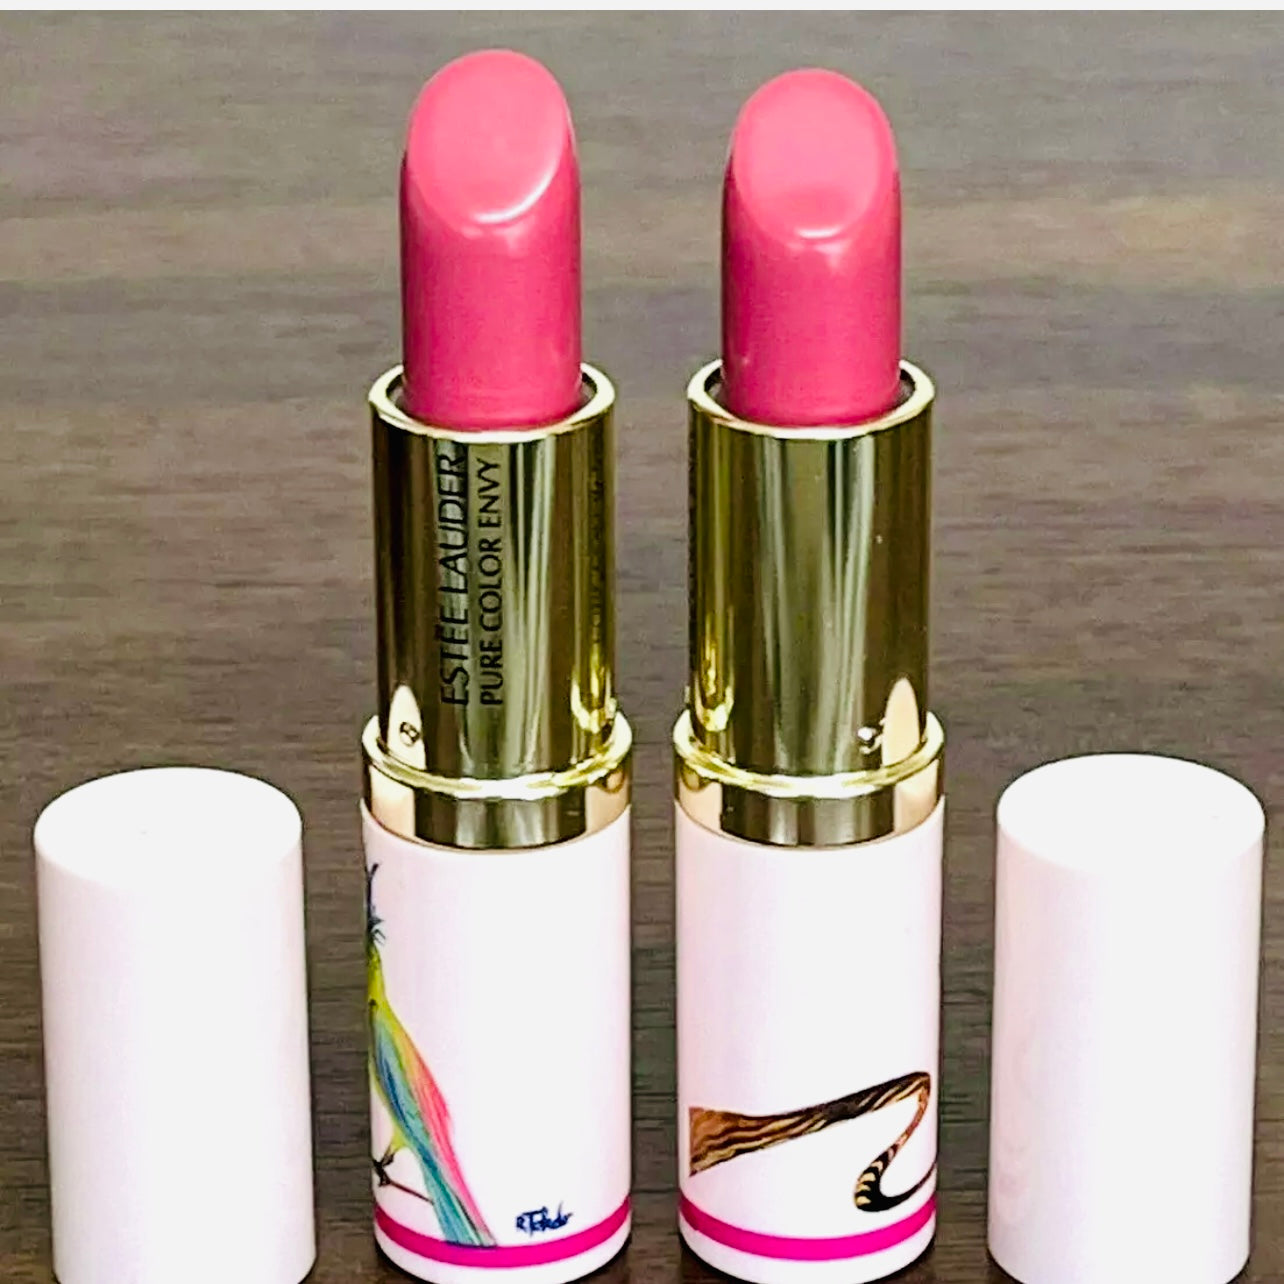 Estée Lauder Pure Color Envy Lipstick | Rose Tea #441